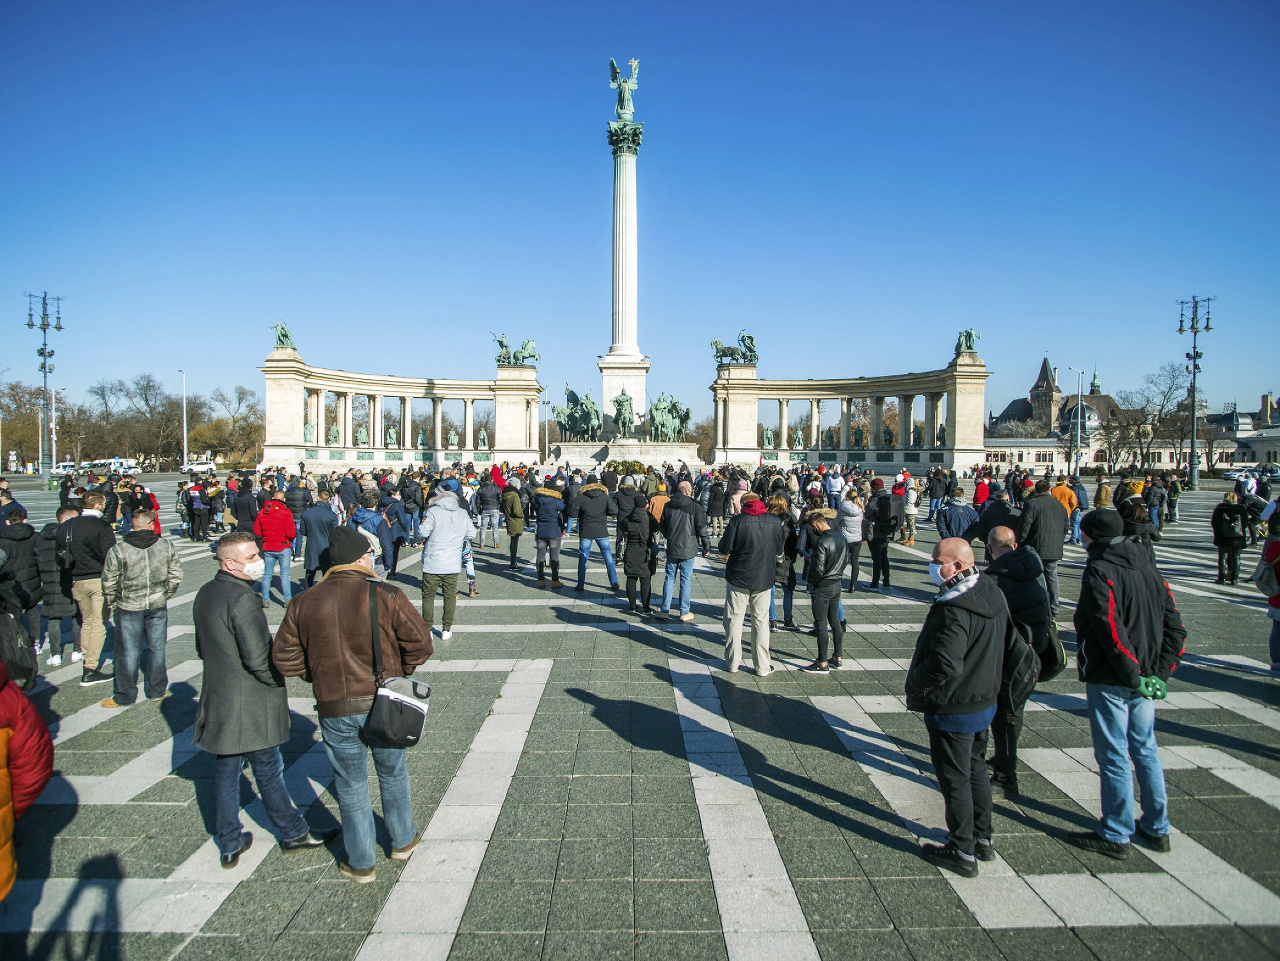 V Budapešti opäť protestovali proti epidemiologickým opatreniam